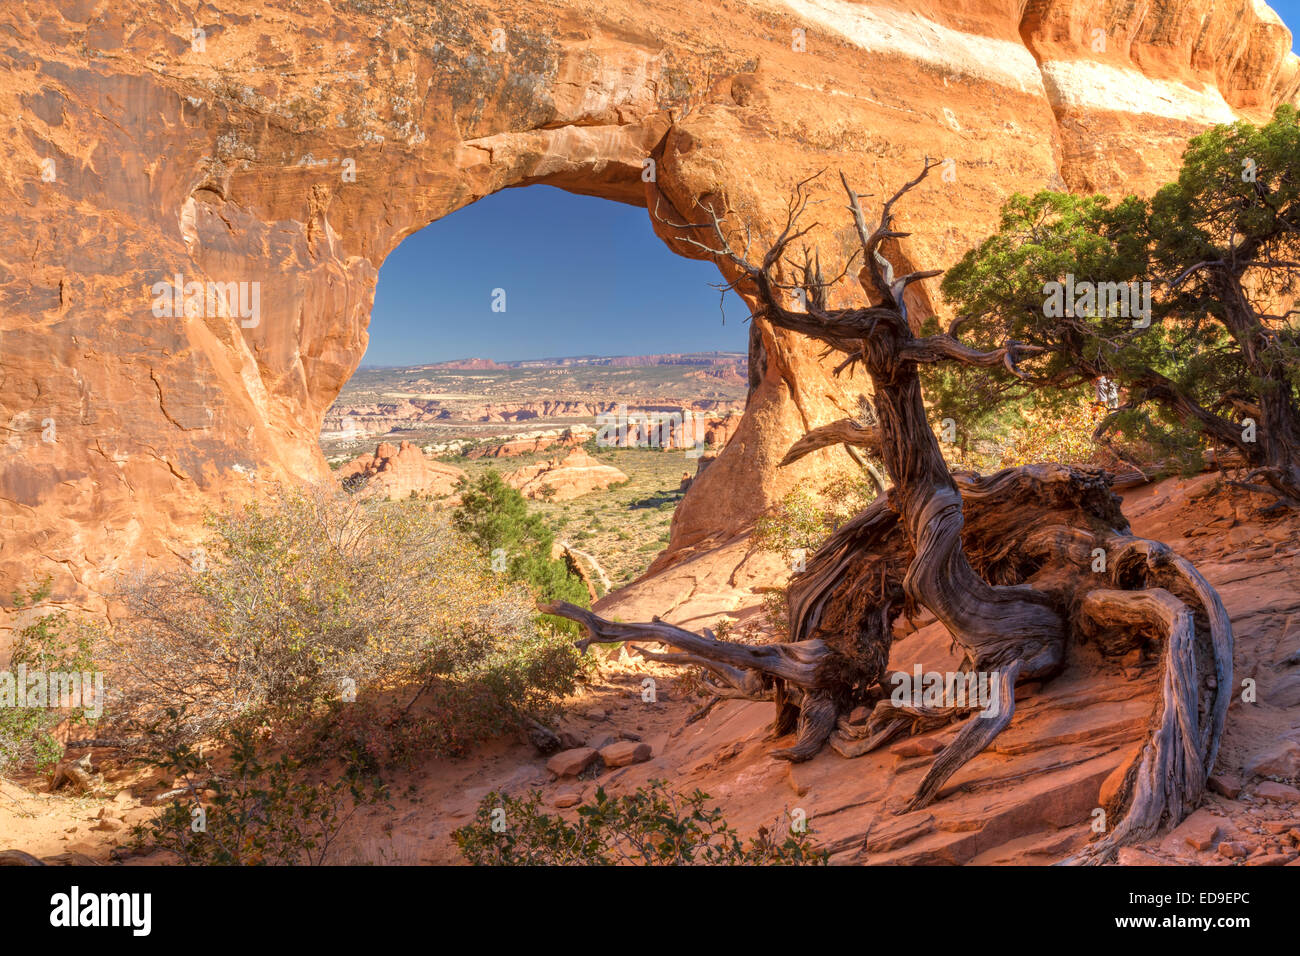 Una Ent-como figuras antropomorfas Juniper guarda árboles partición Arch en el Devil's Garden sección del Parque Nacional Arches en Moab Uta Foto de stock